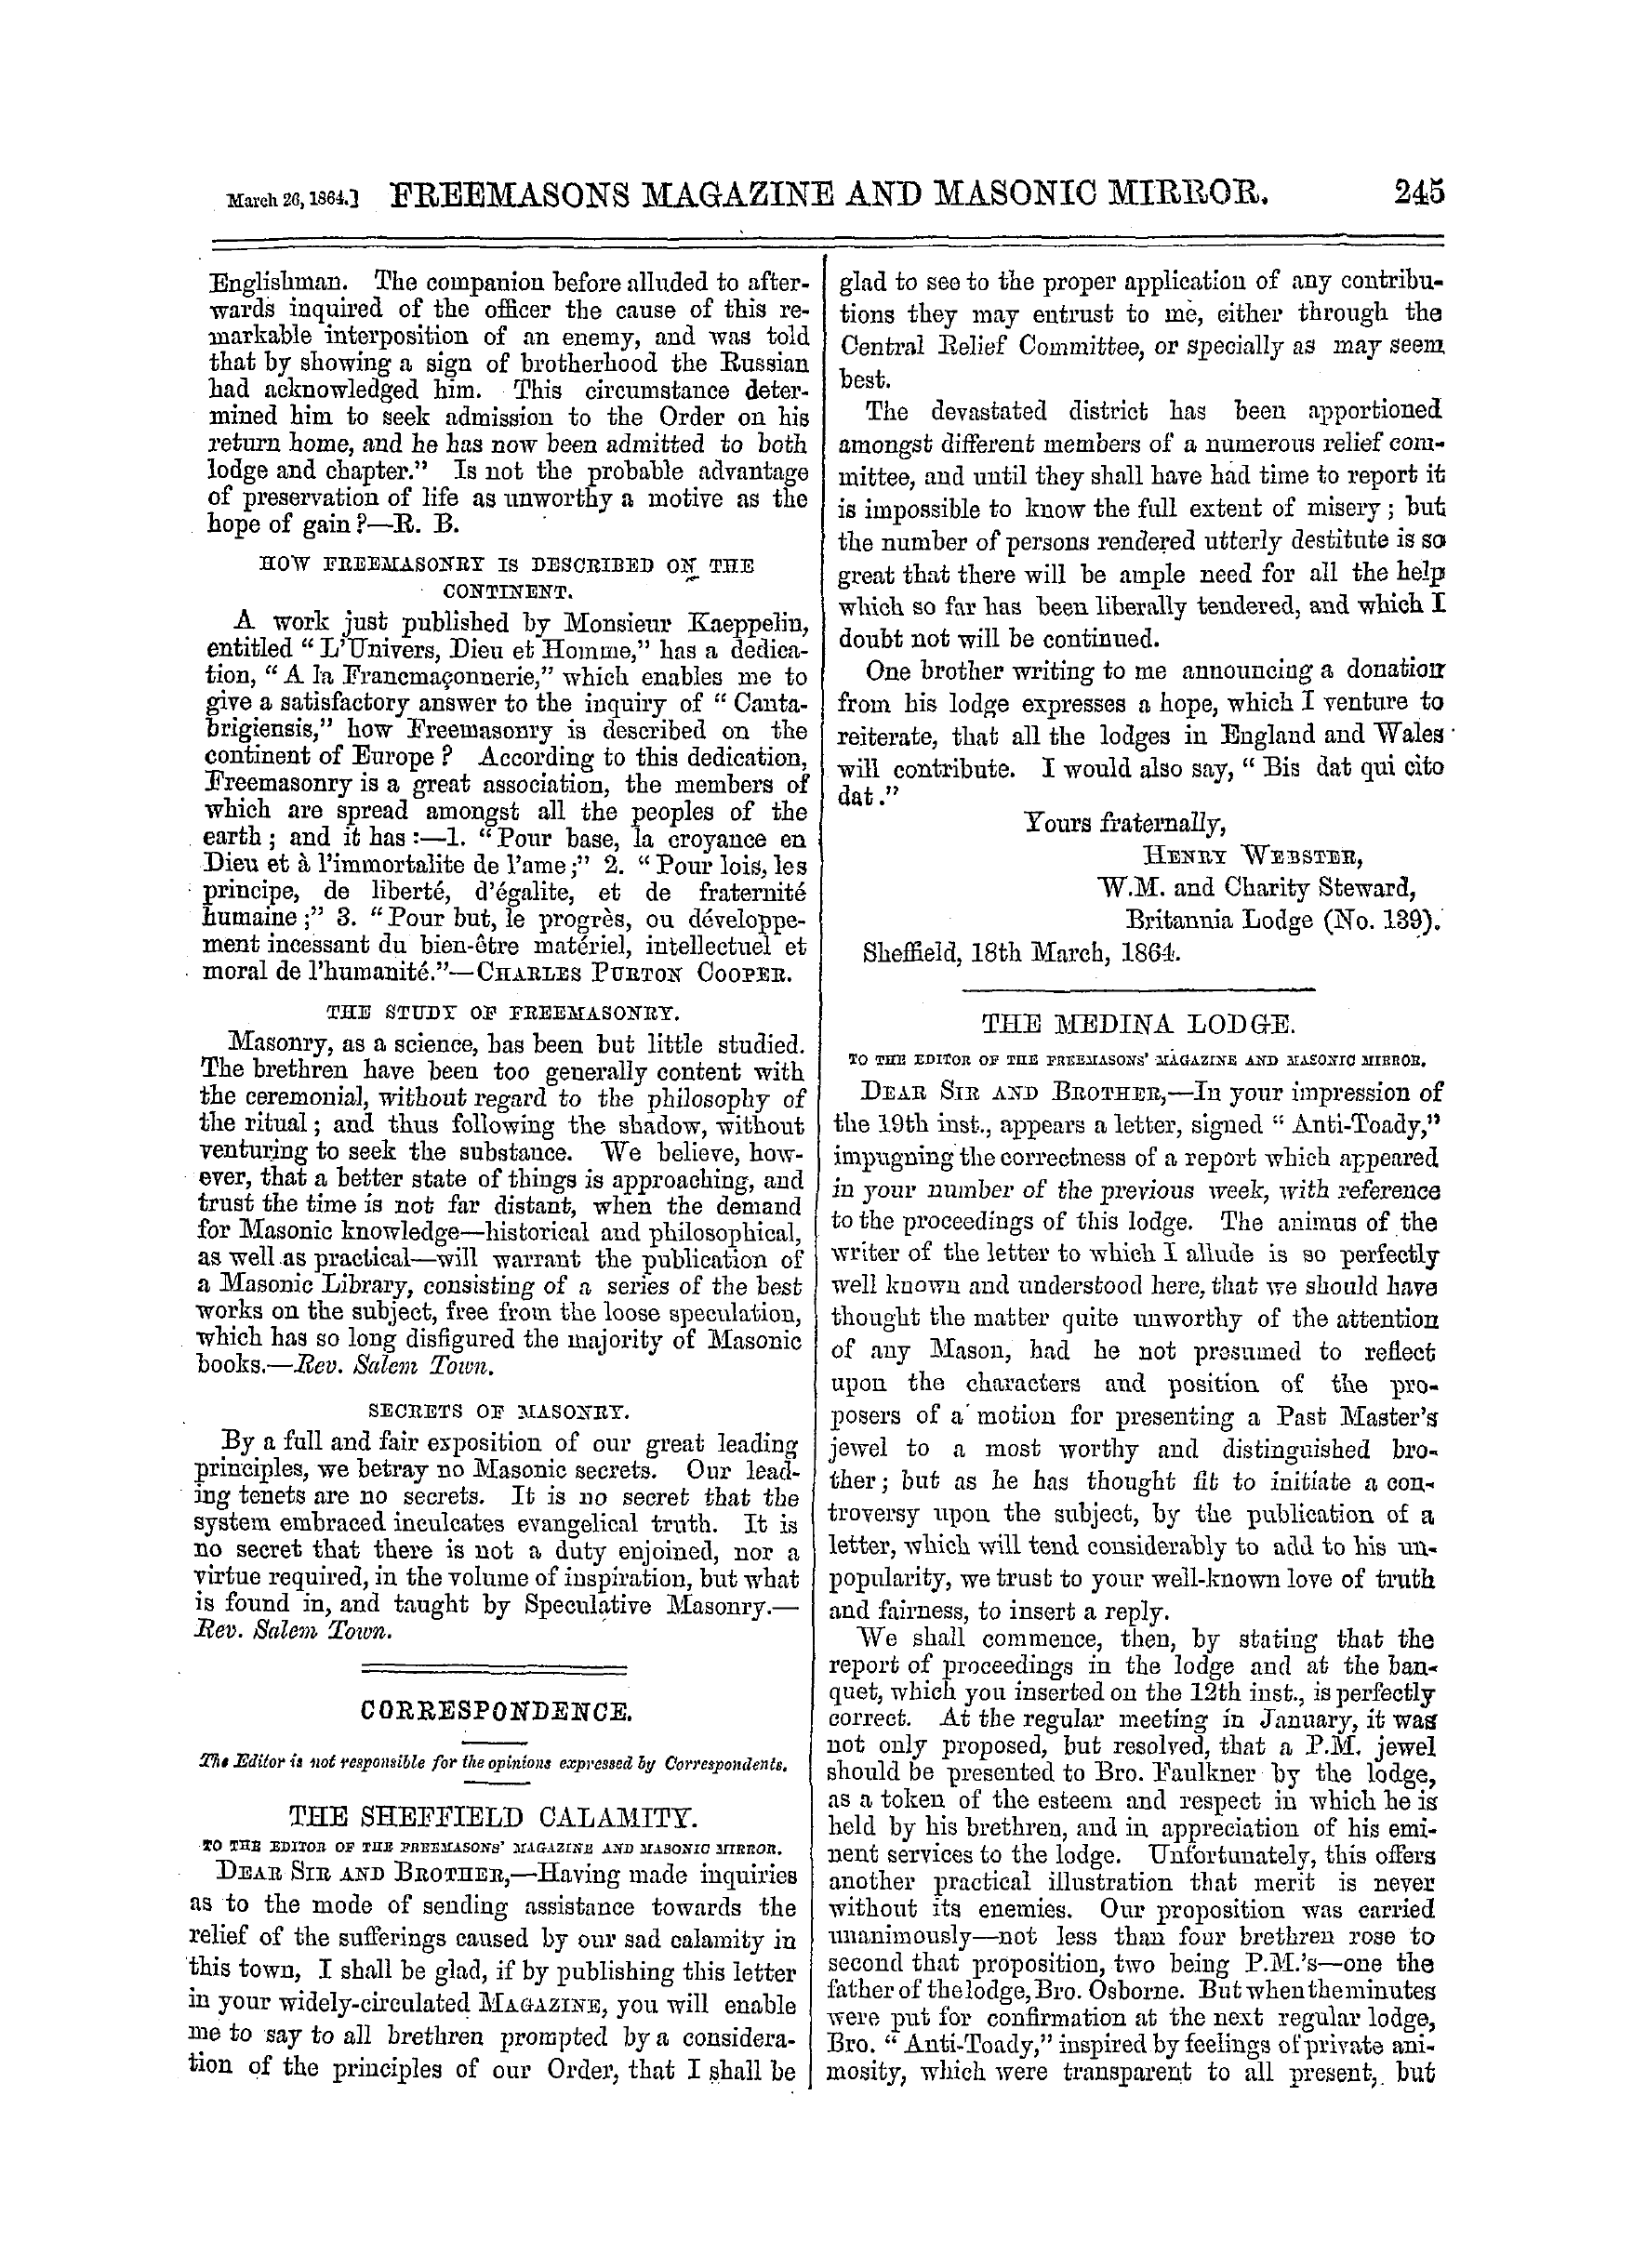 The Freemasons' Monthly Magazine: 1864-03-26: 9